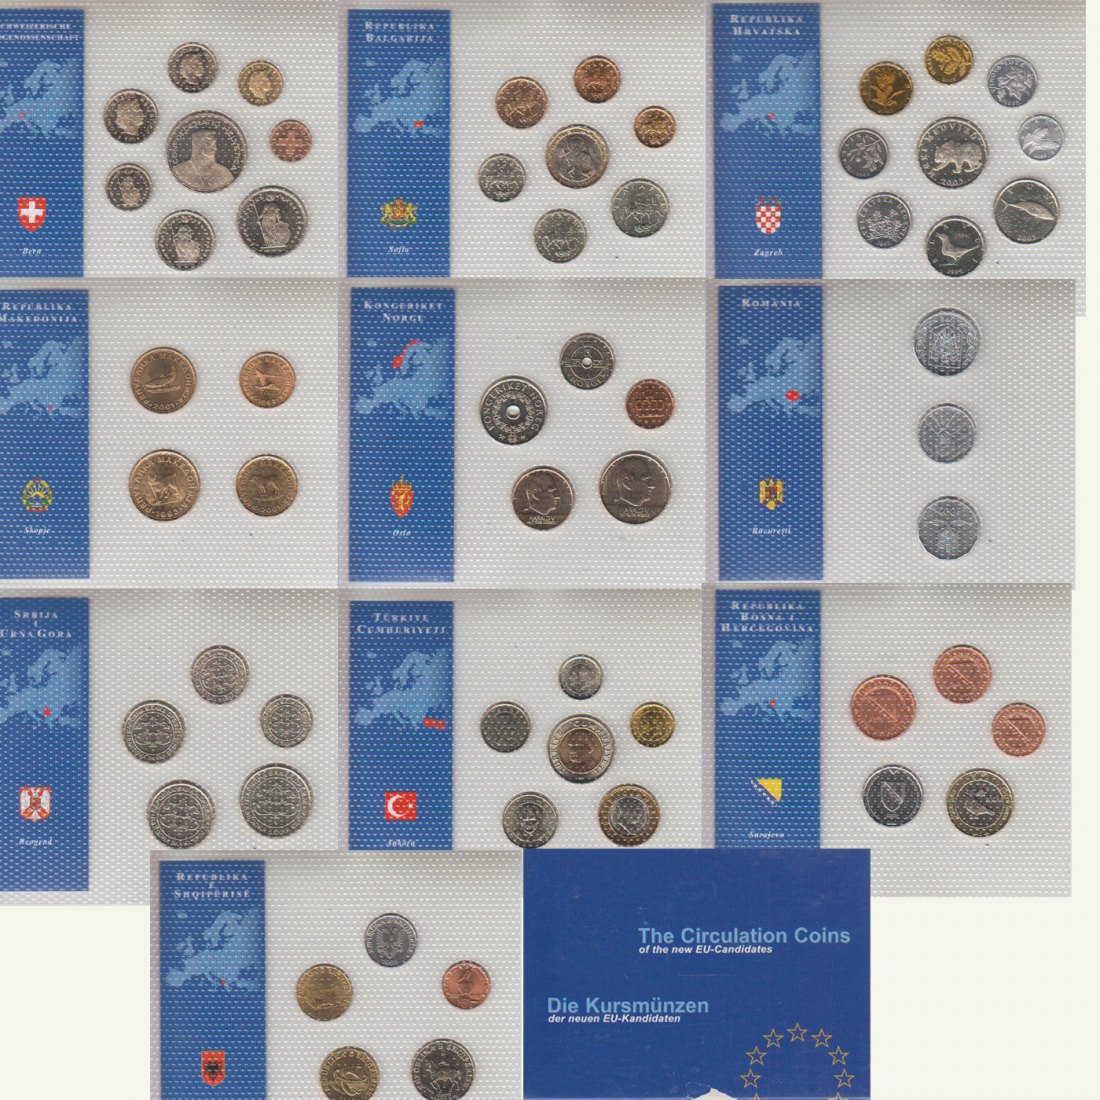  10 KMS *Die Kursmünzen der neuen EU-Kandidaten - Schweiz, Türkei, Kroatien, Romänien usw*   